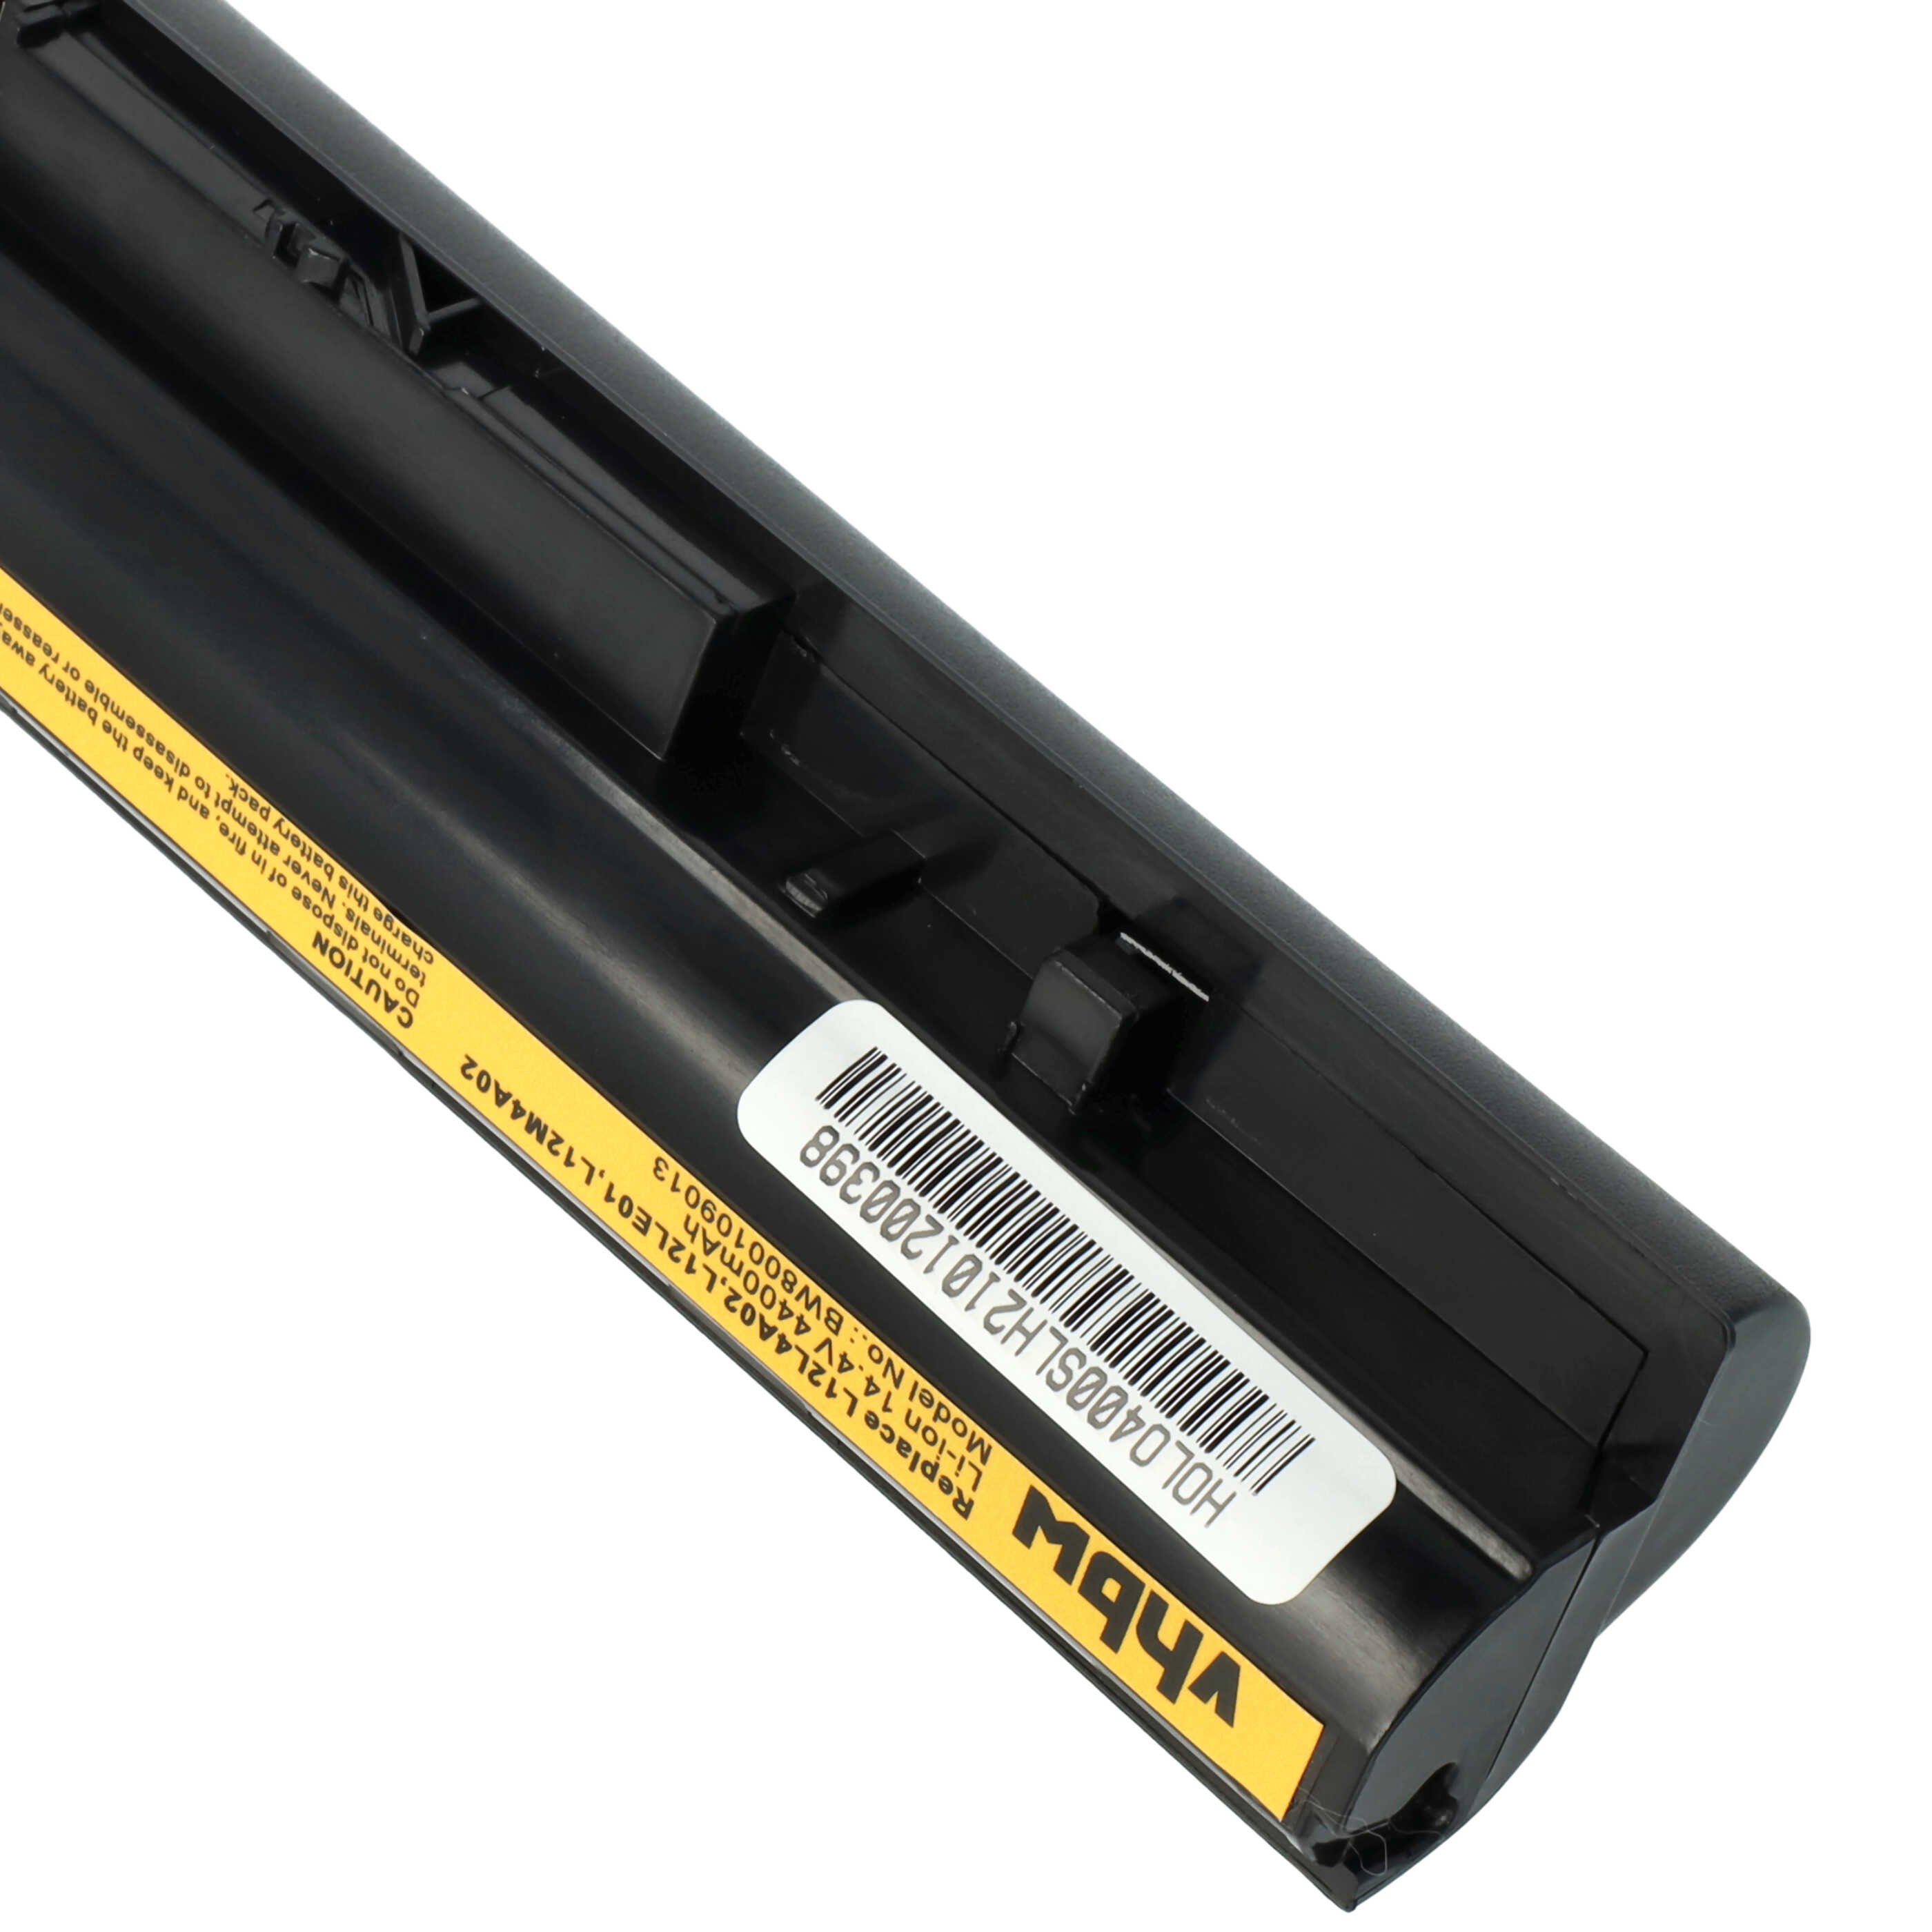 Batterie remplace Lenovo 121500171, 121500172, 121500173 pour ordinateur portable - 4400mAh 14,8V Li-ion, noir